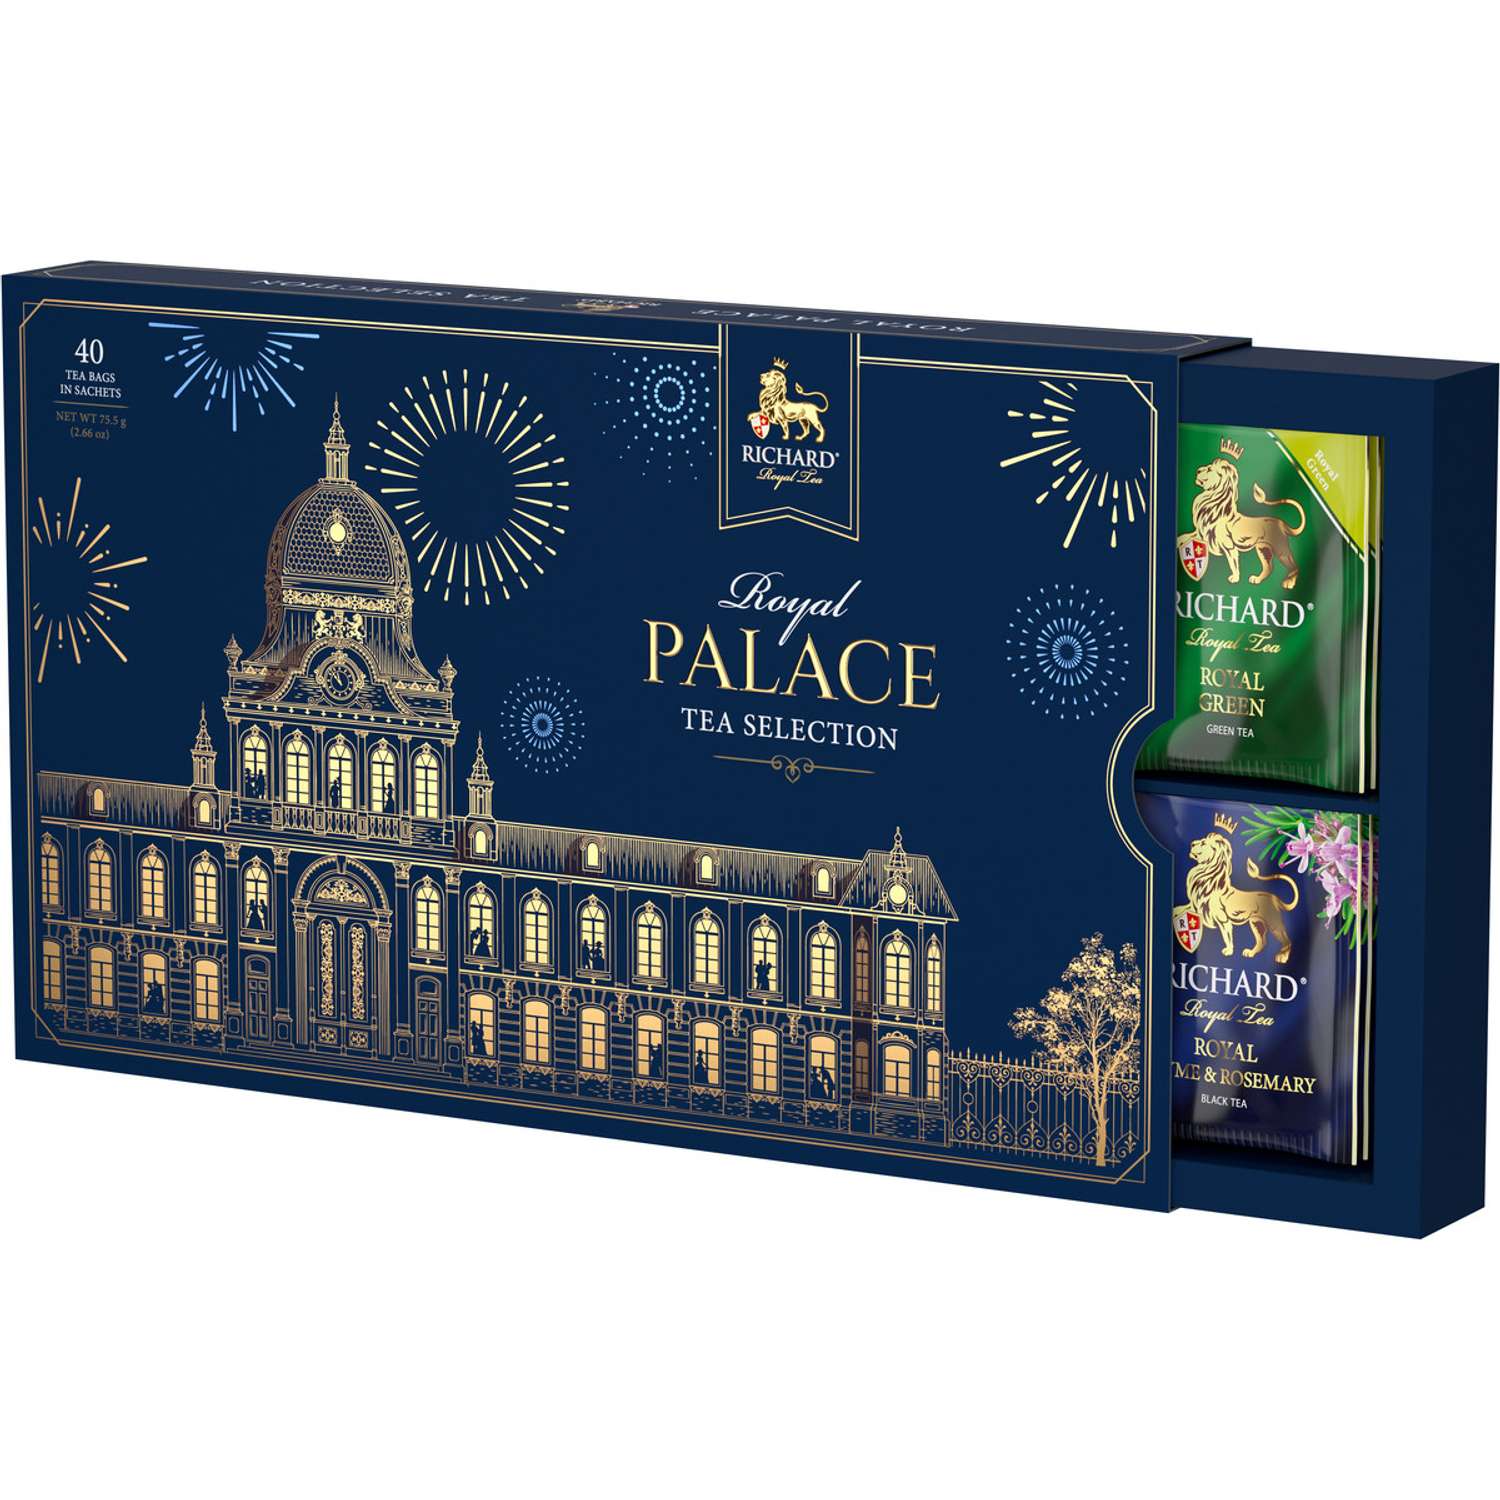 Чайное ассорти Richard Royal Palace tea selection 40 пакетиков 8 вкусов подарочная упаковка - фото 4